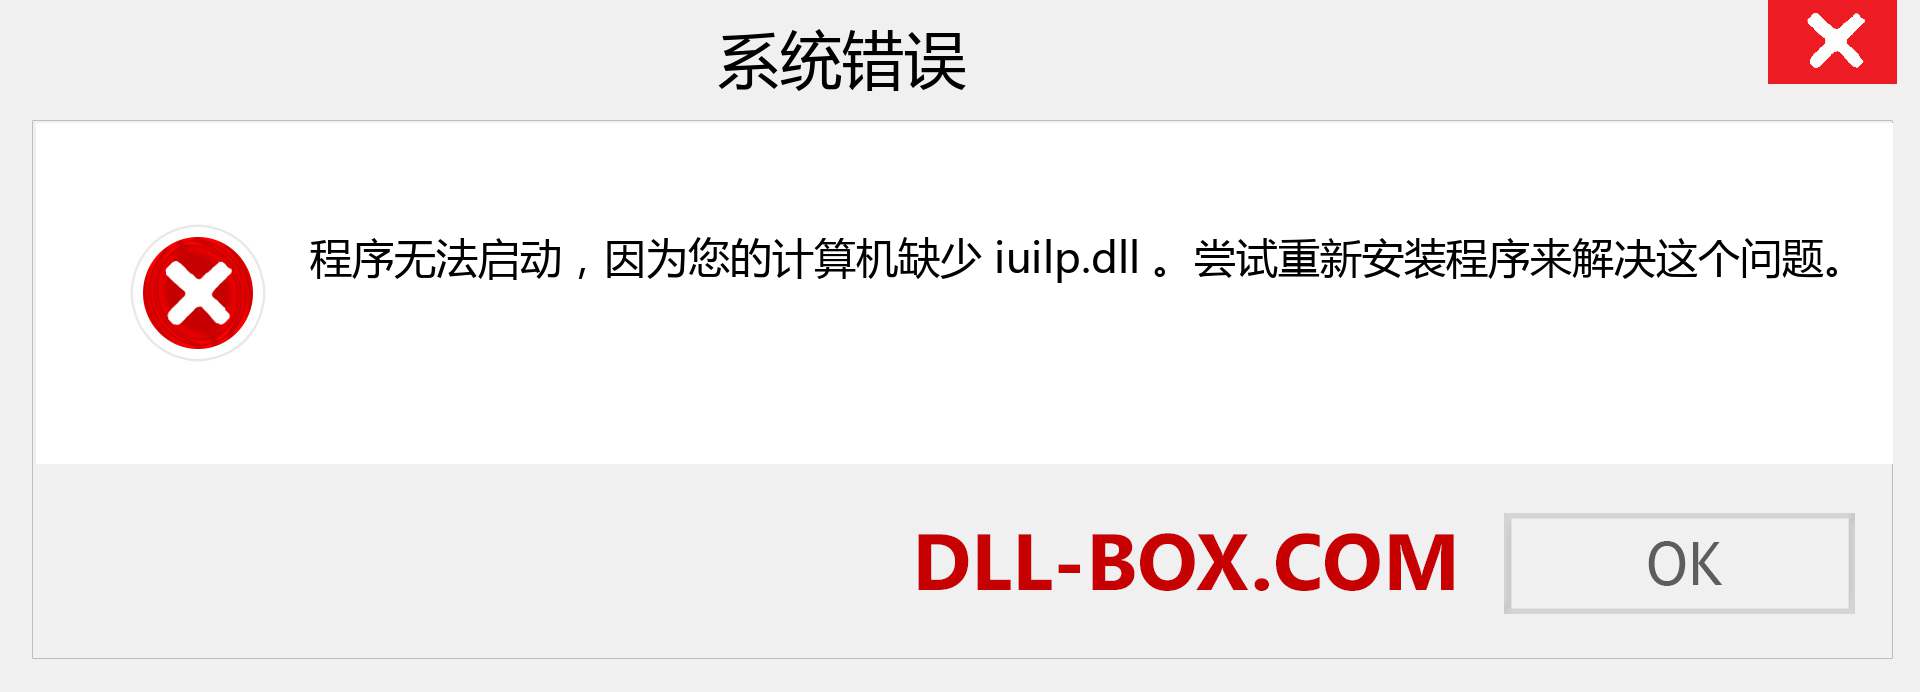 iuilp.dll 文件丢失？。 适用于 Windows 7、8、10 的下载 - 修复 Windows、照片、图像上的 iuilp dll 丢失错误